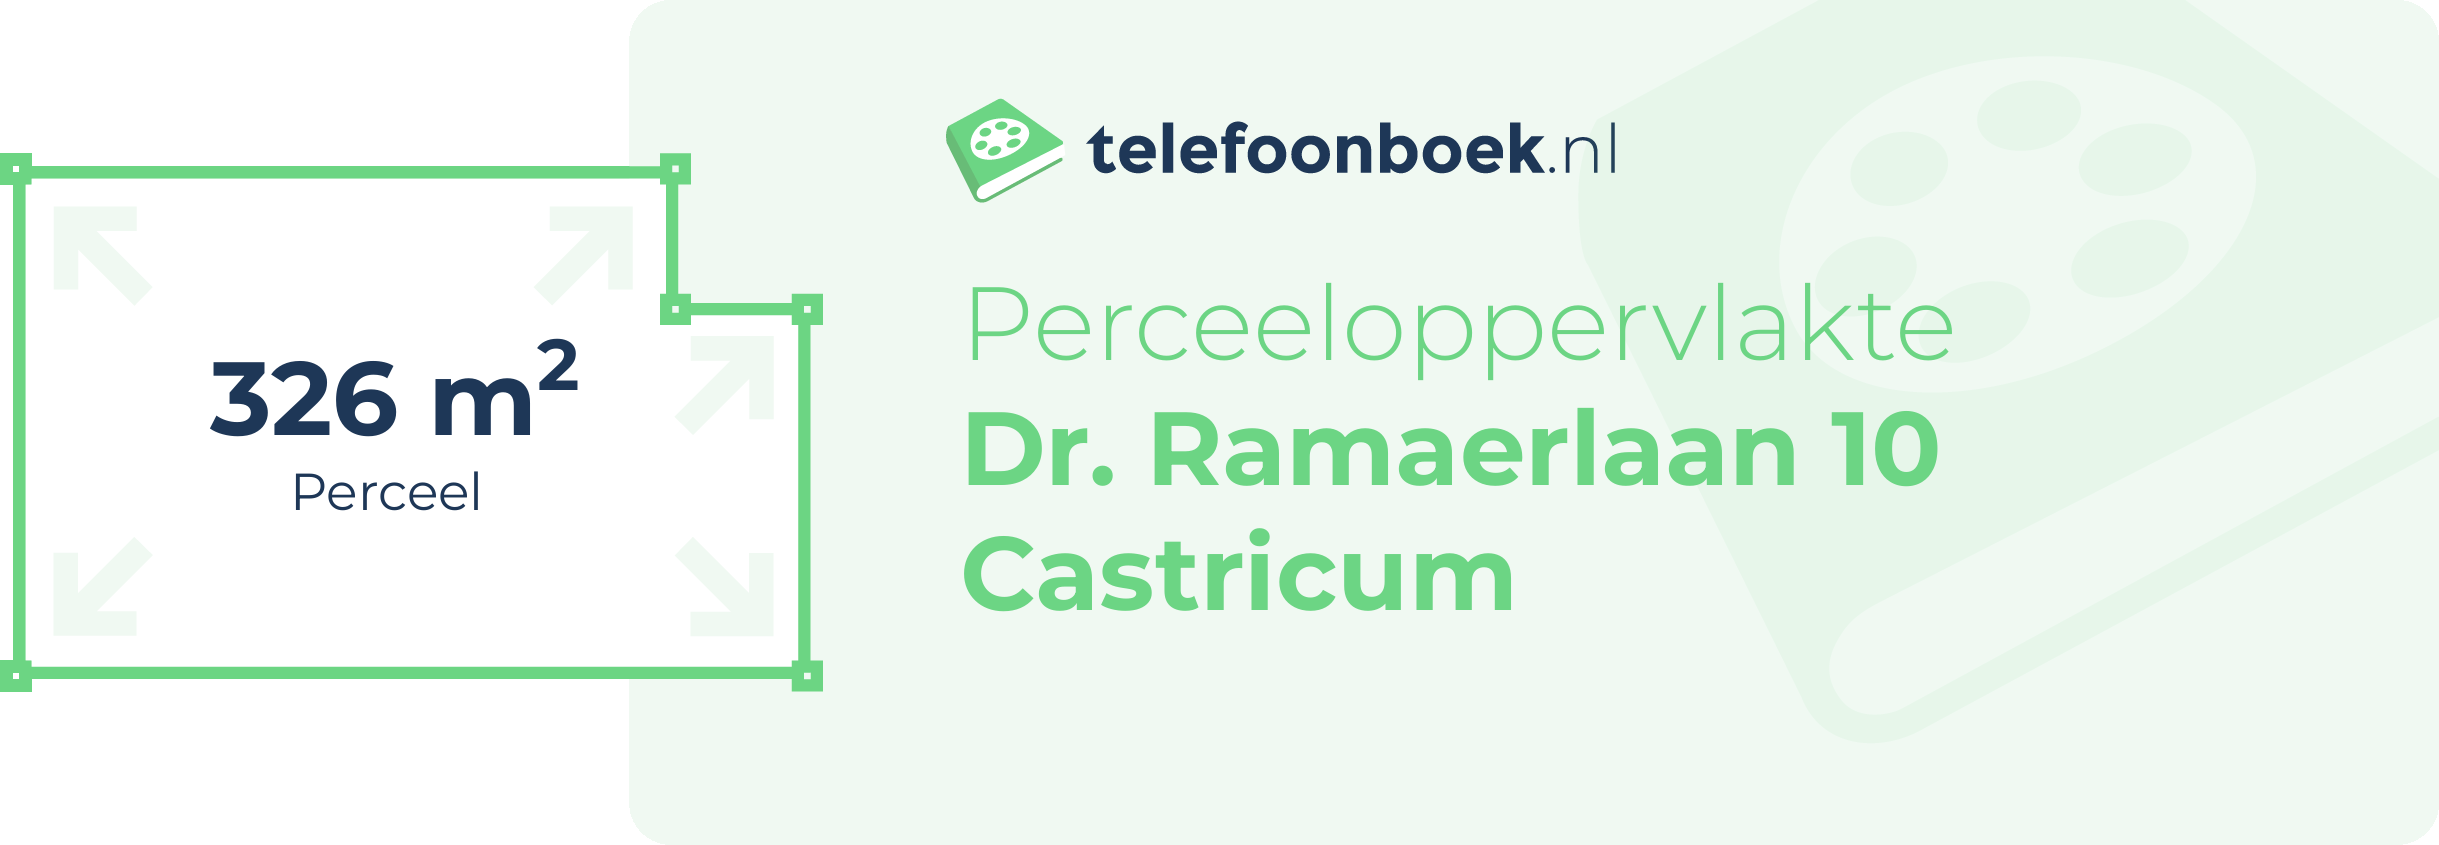 Perceeloppervlakte Dr. Ramaerlaan 10 Castricum